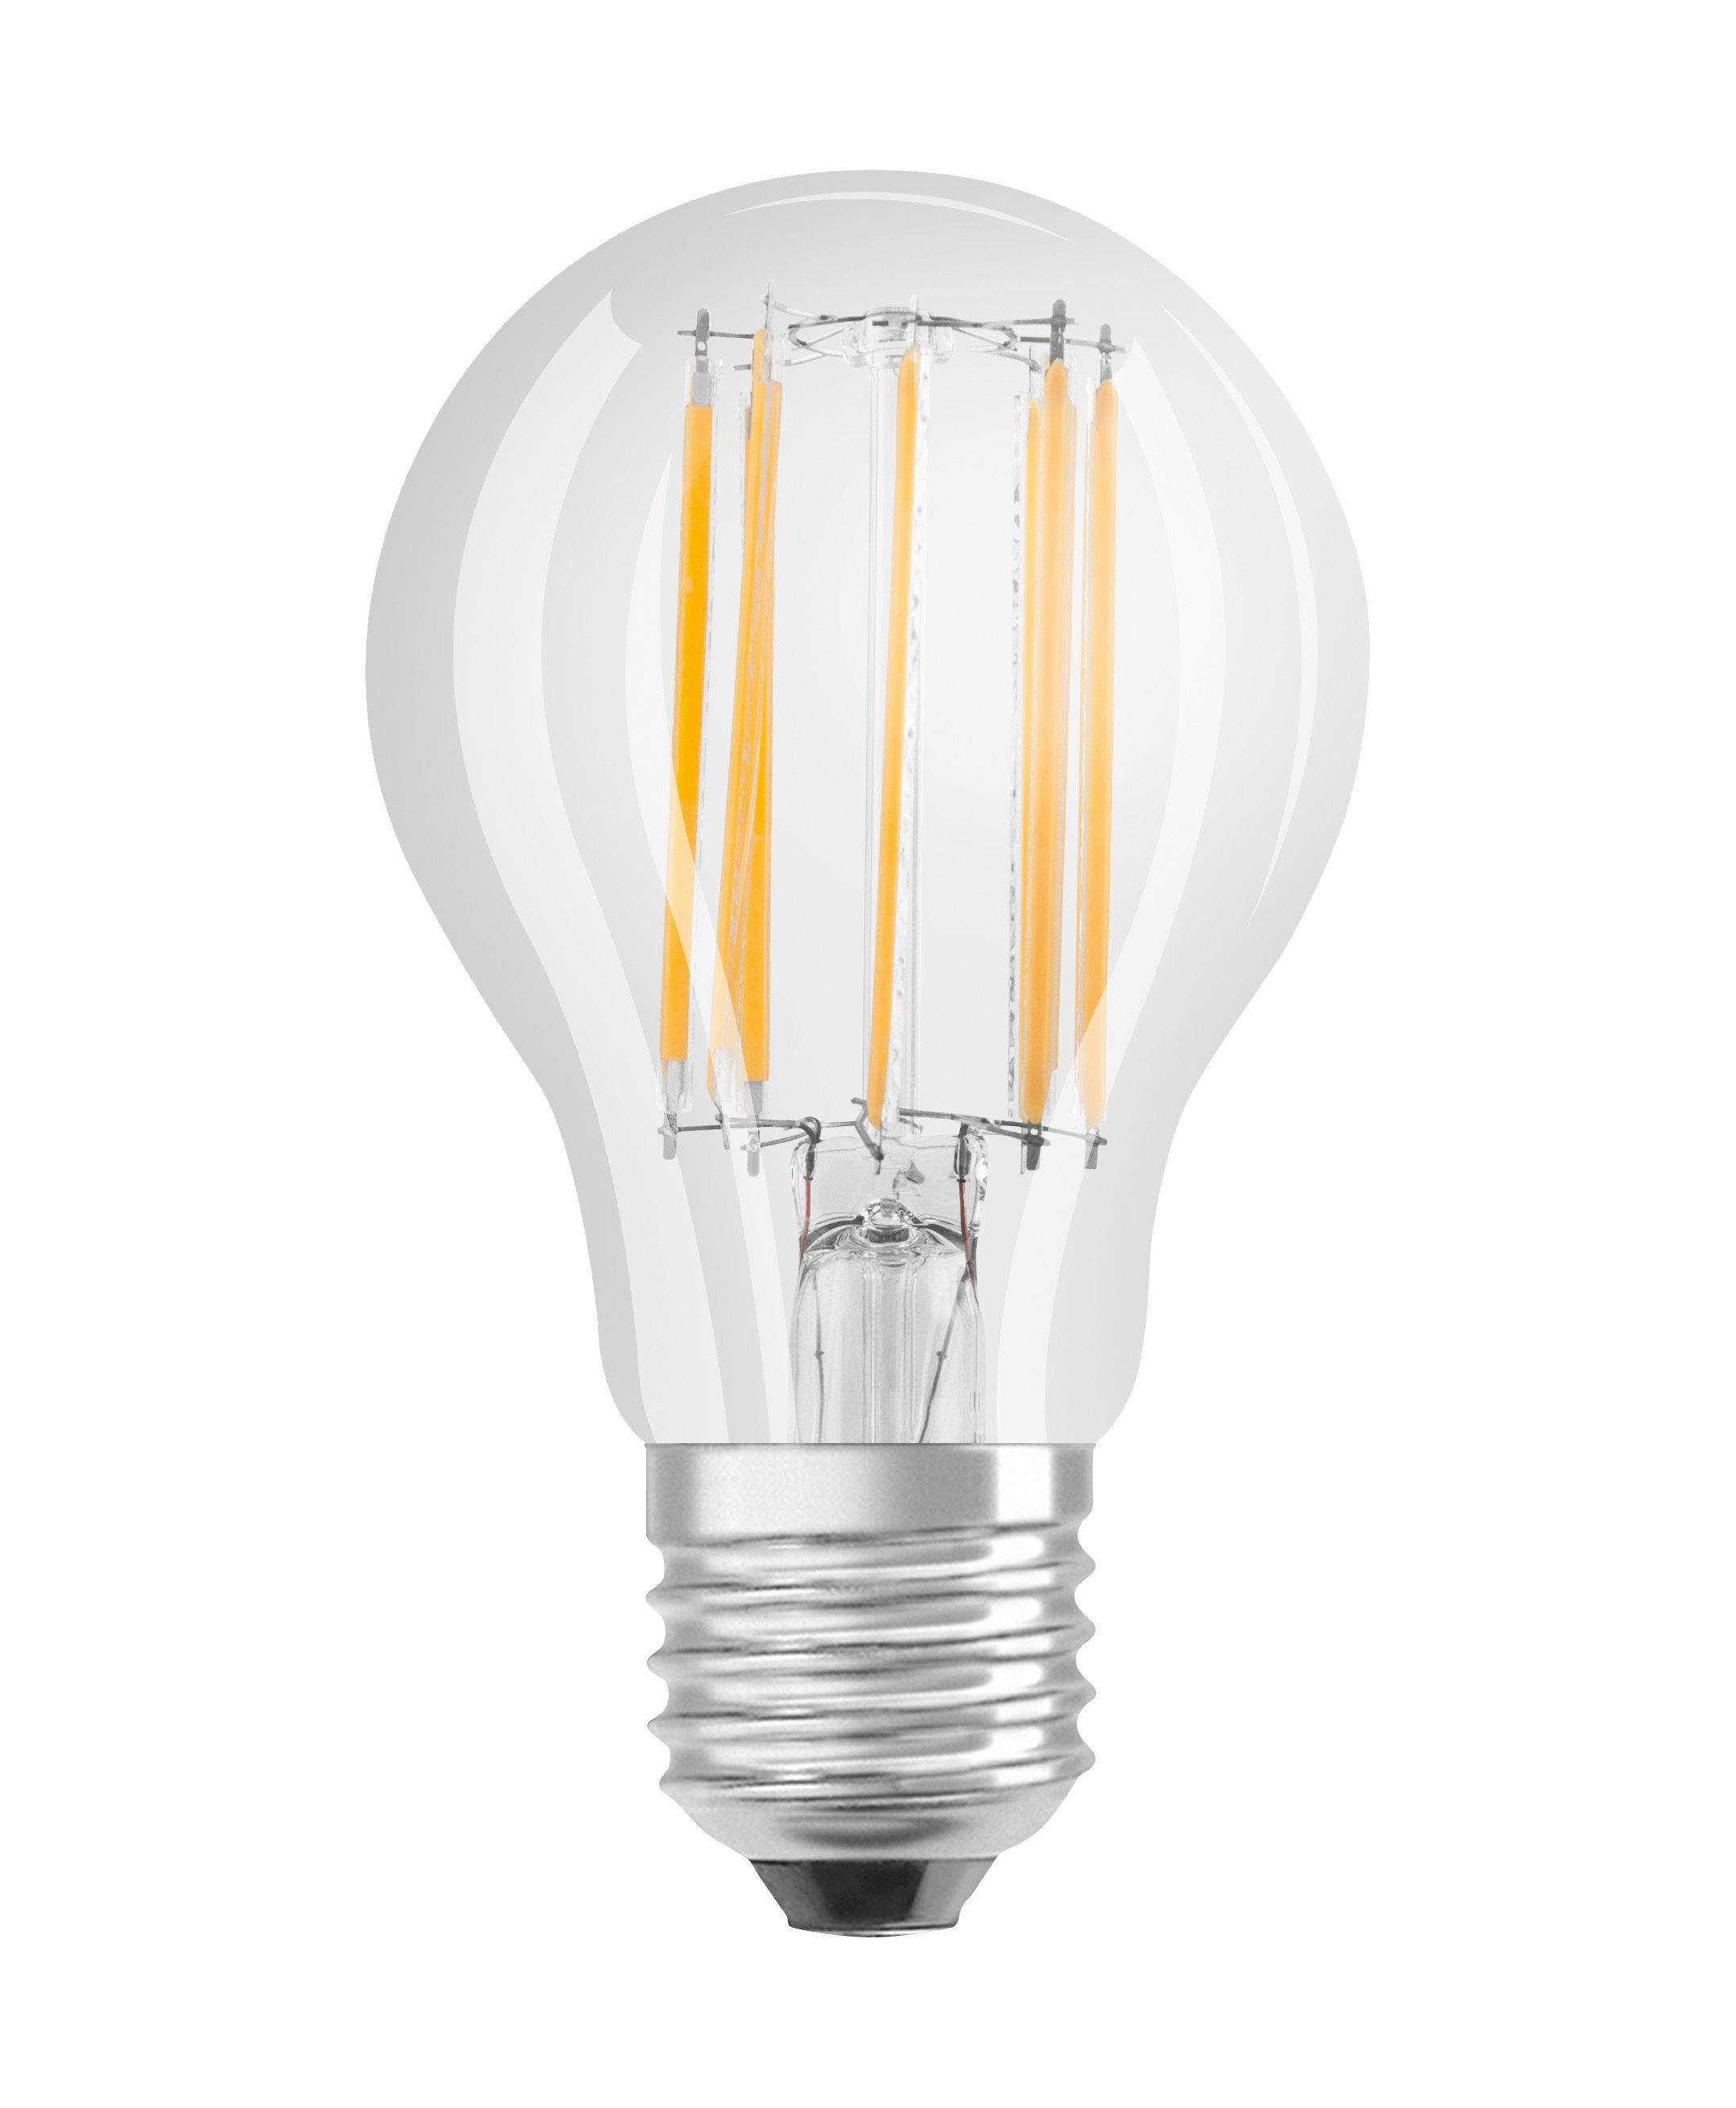 Ampoule LED verre transparent standard E27, 7.5W, blanc chaud.